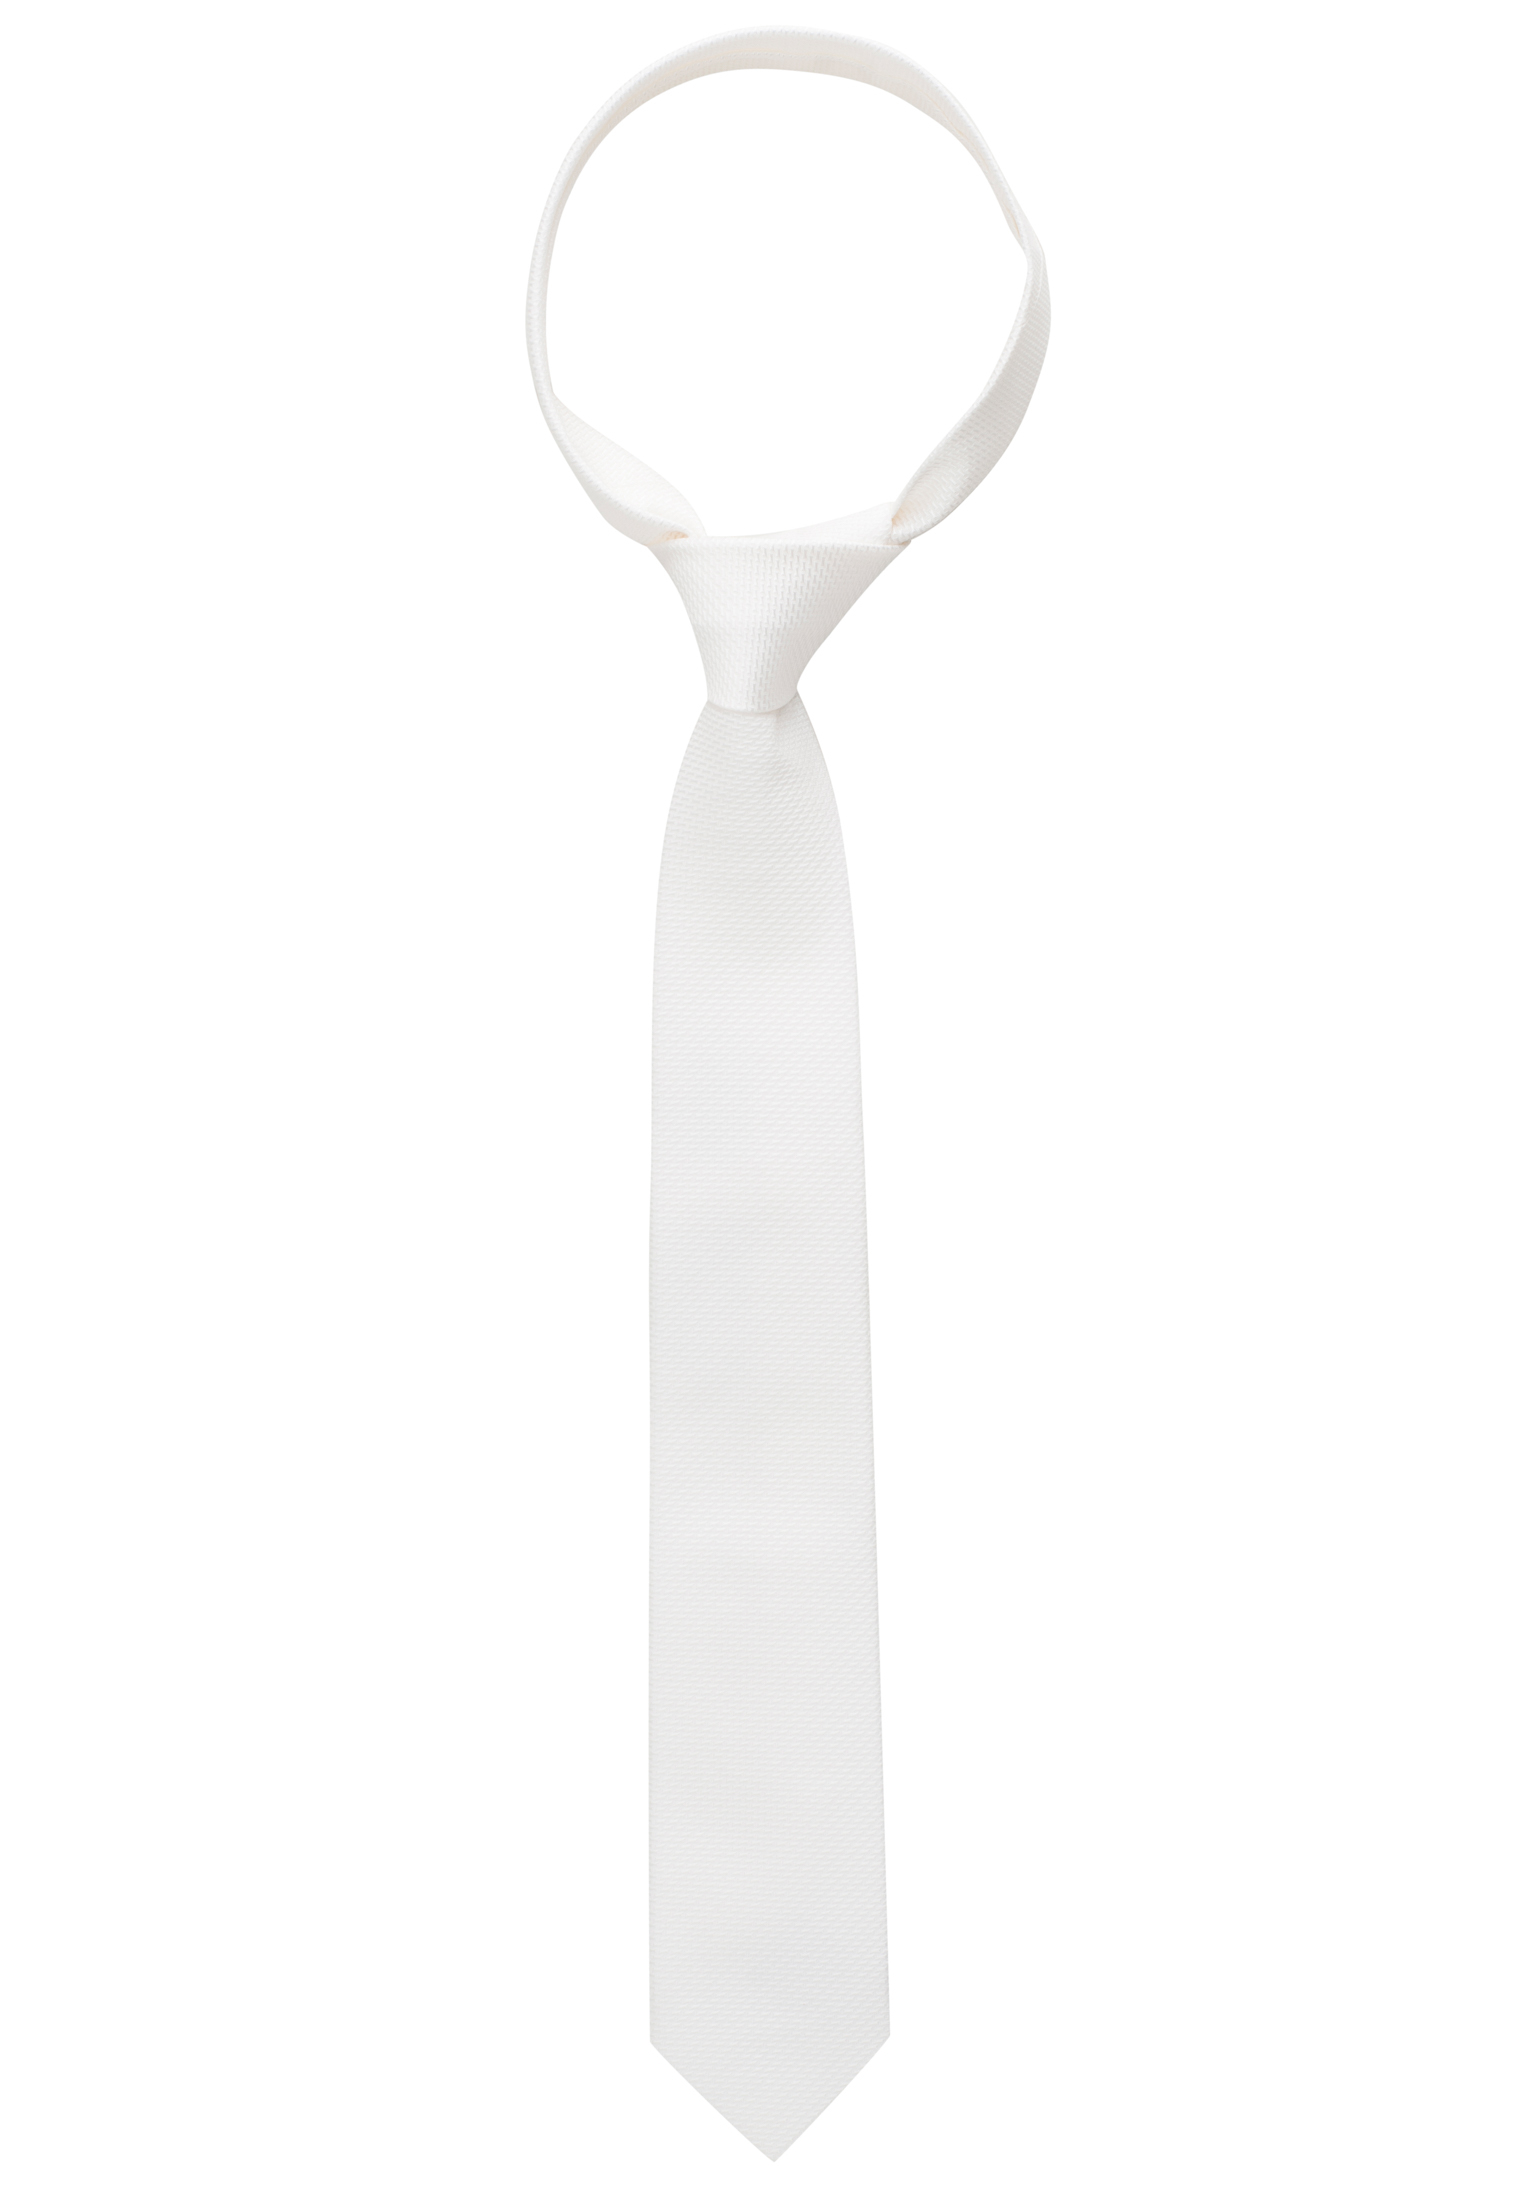 Krawatte in weiß strukturiert | 1AC01872-00-01-142 142 | | weiß